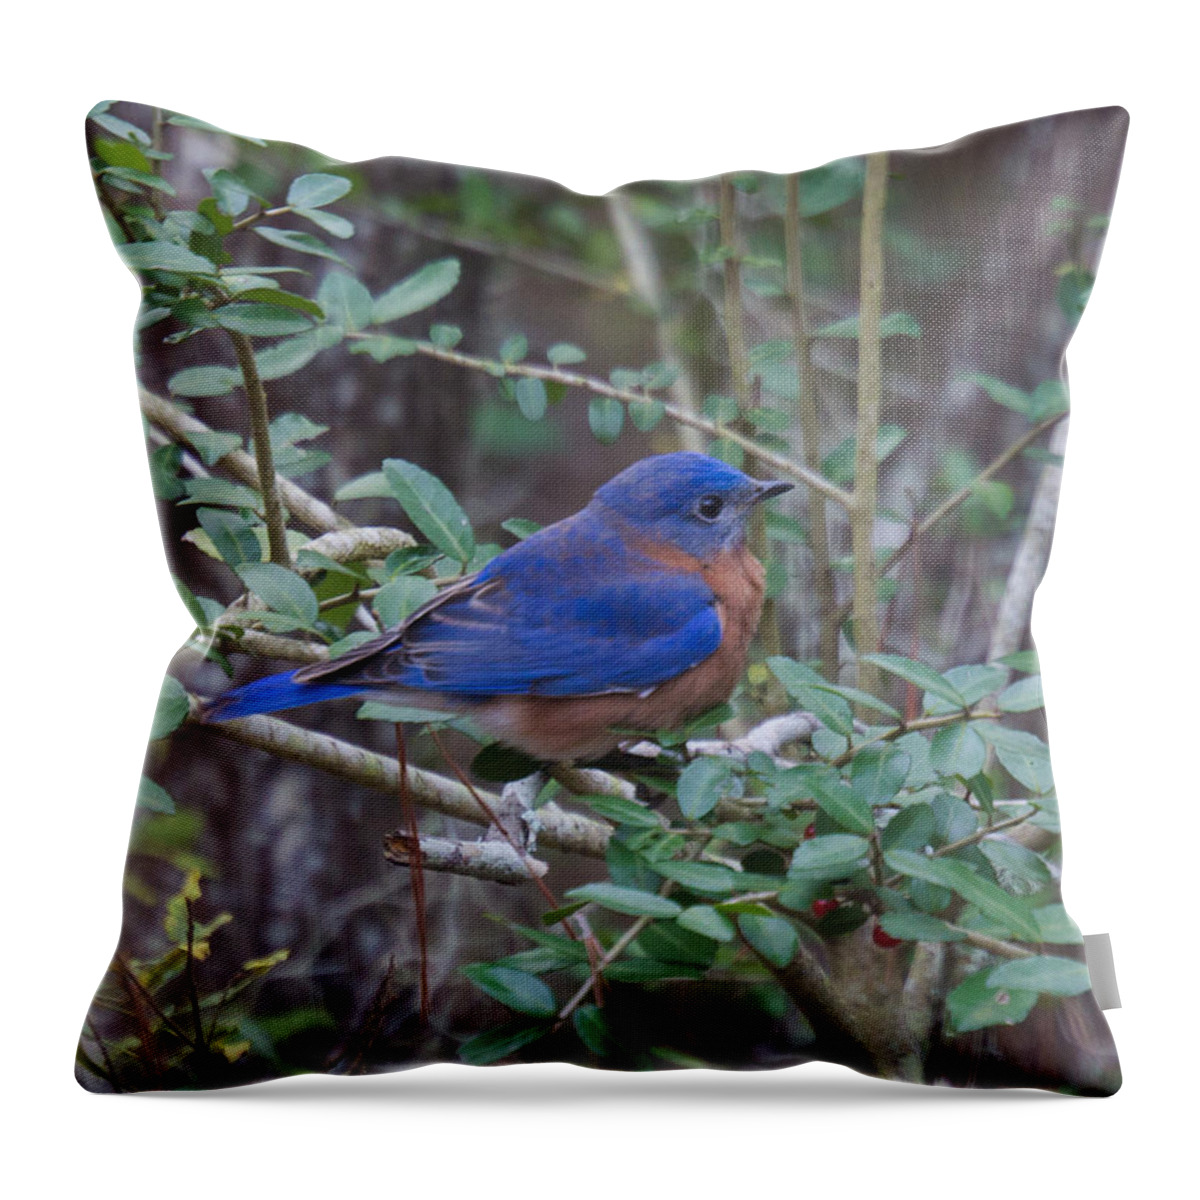 Bluebird Throw Pillow featuring the photograph Bluebird by Patricia Schaefer